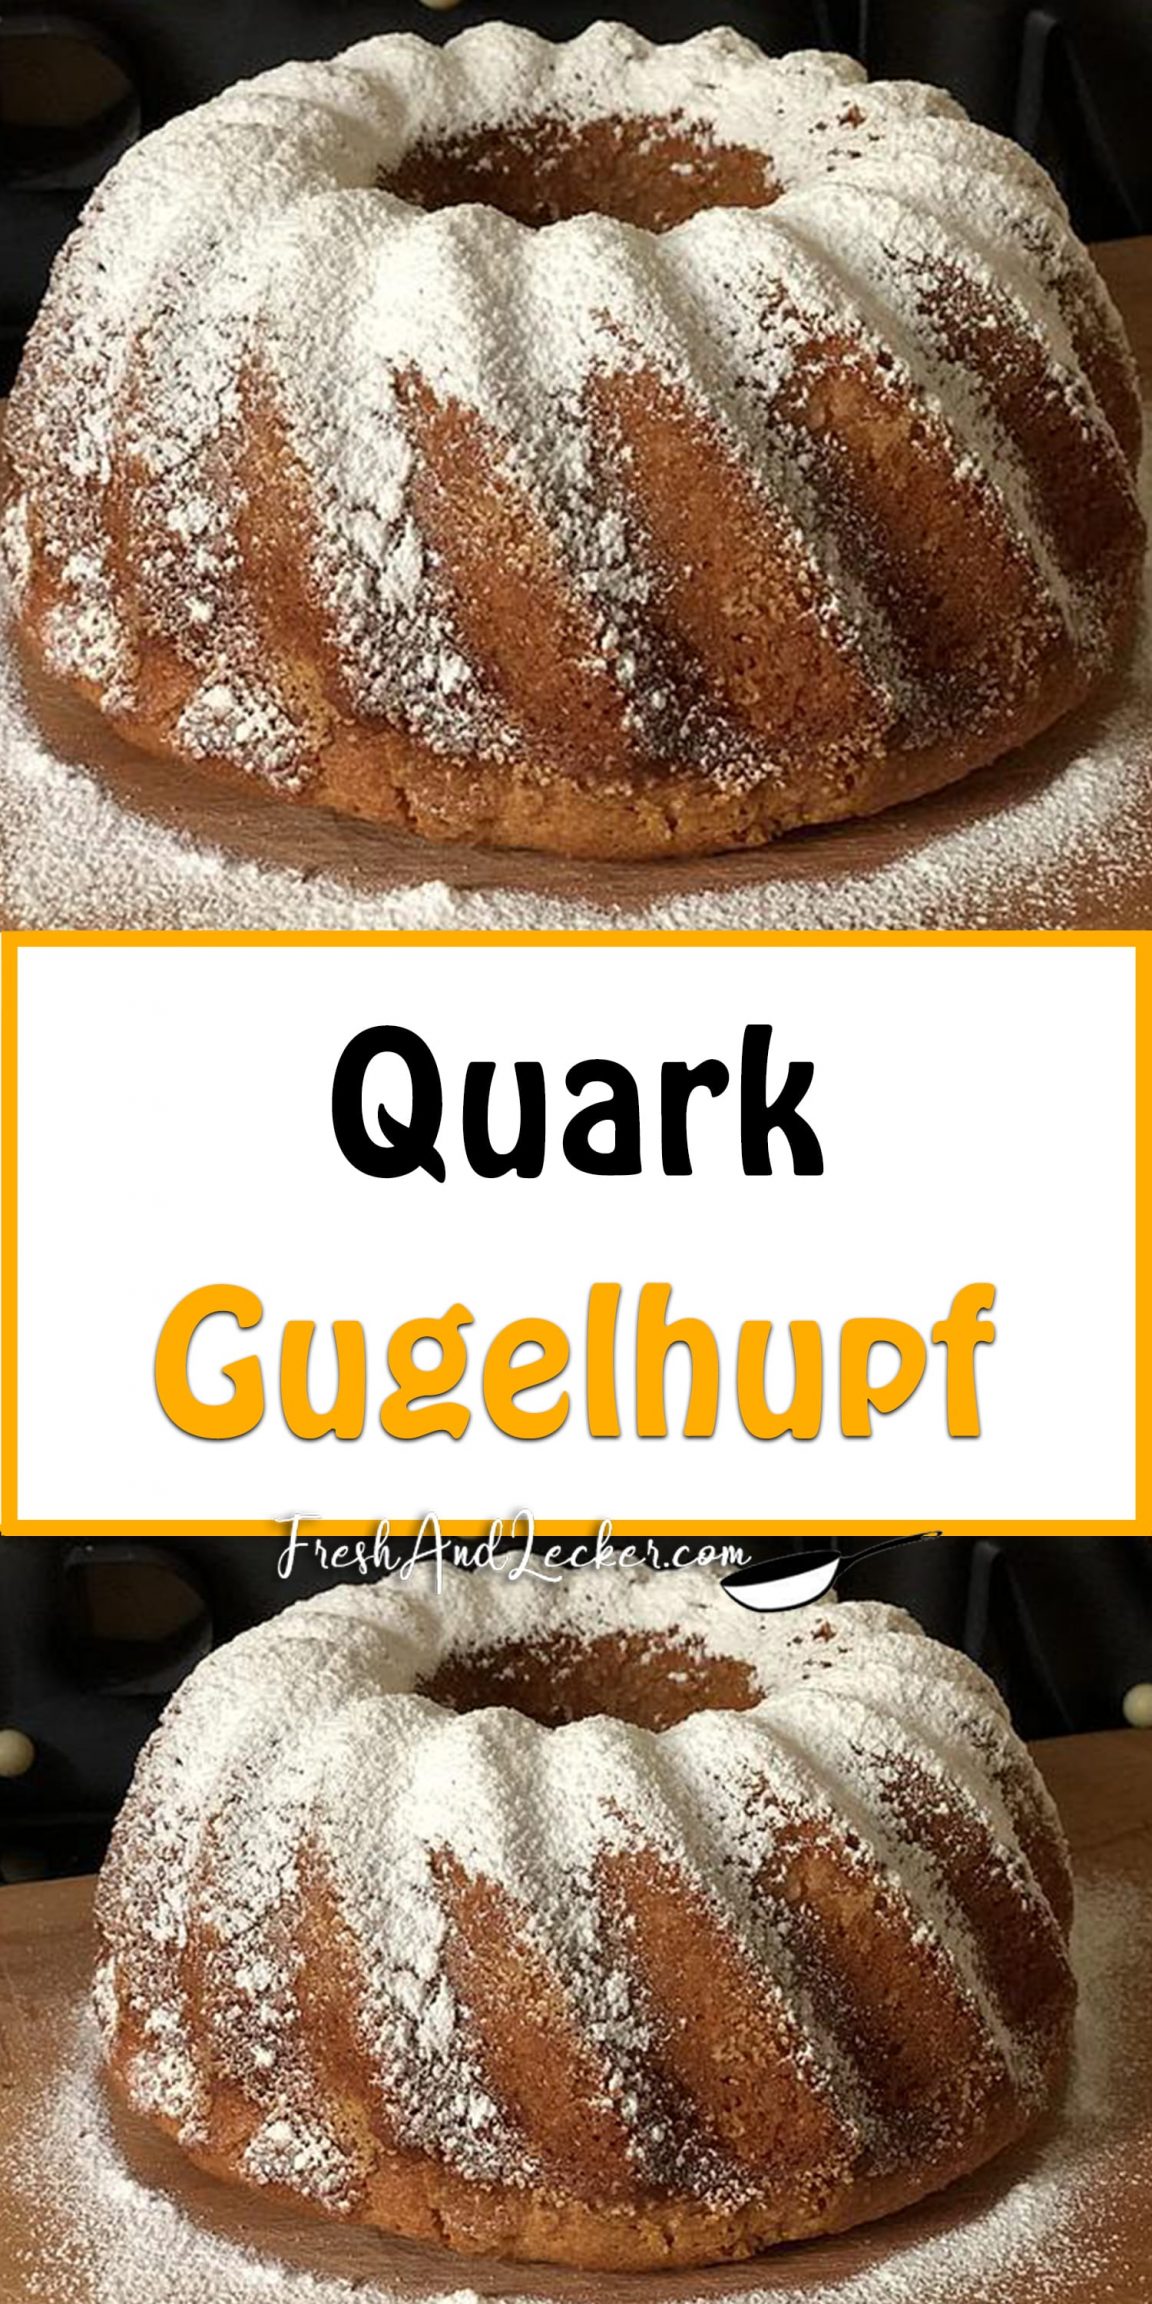 Quark-Gugelhupf - Fresh Lecker